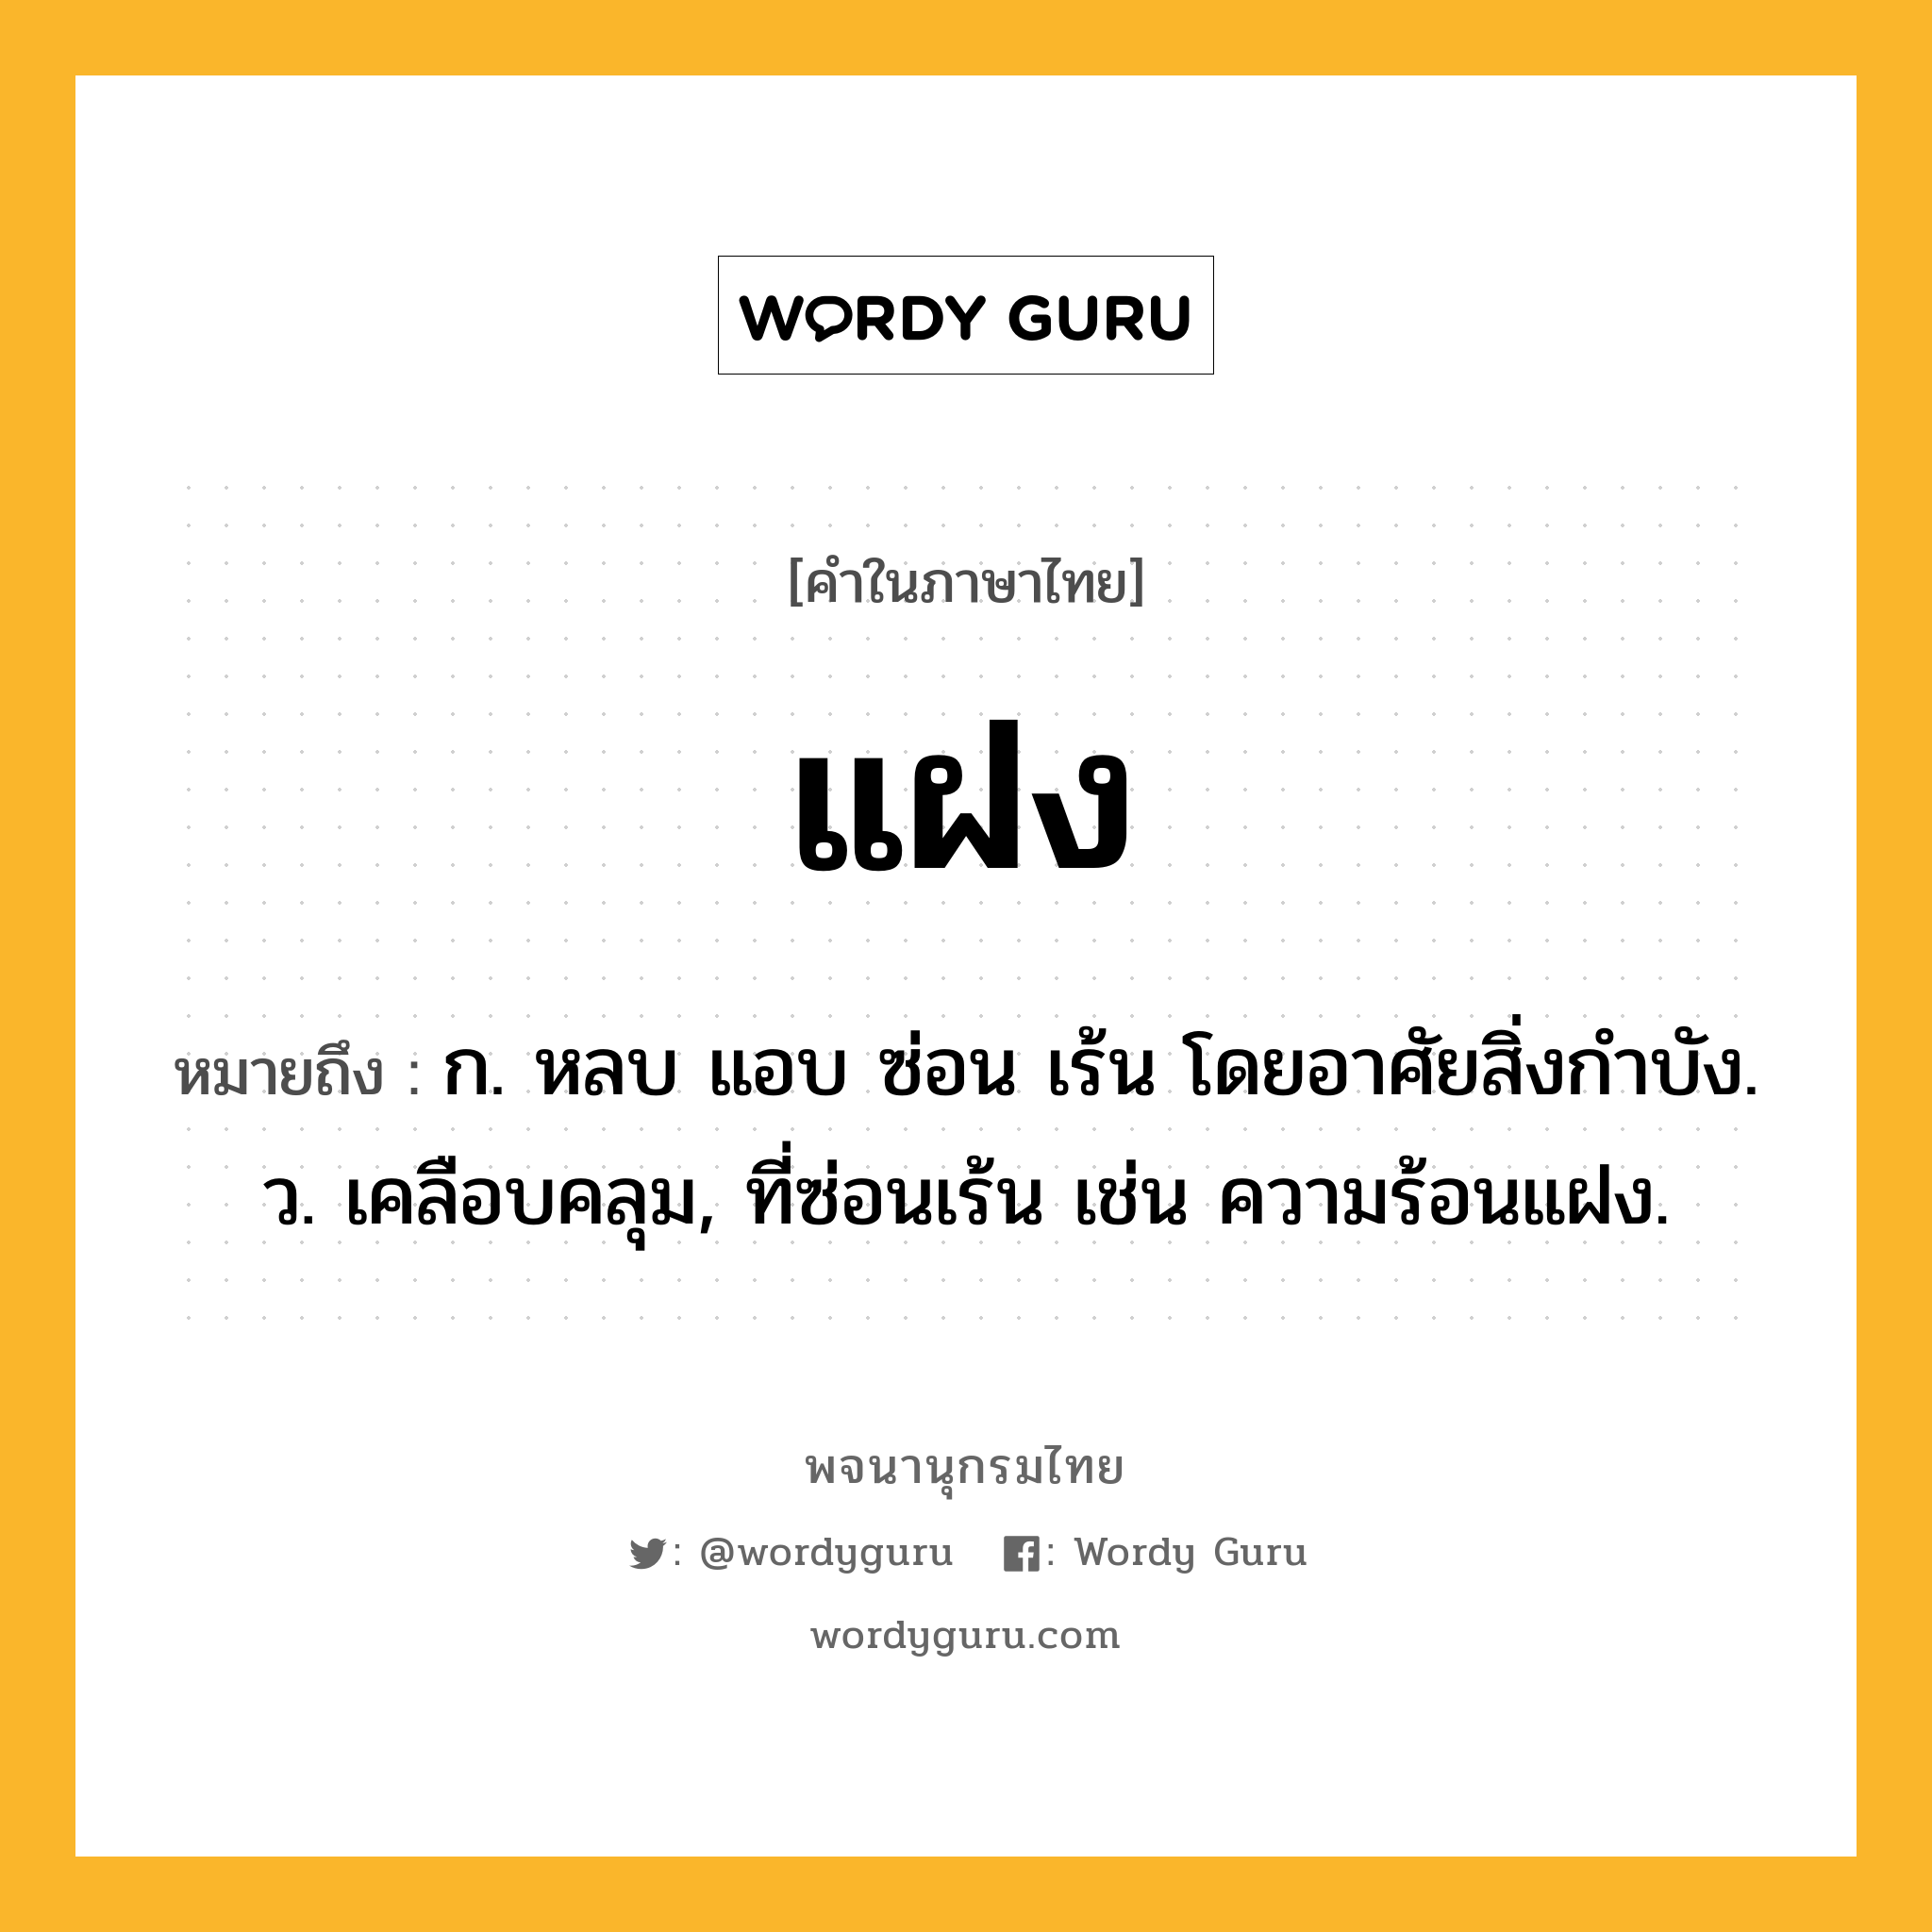 แฝง ความหมาย หมายถึงอะไร?, คำในภาษาไทย แฝง หมายถึง ก. หลบ แอบ ซ่อน เร้น โดยอาศัยสิ่งกําบัง. ว. เคลือบคลุม, ที่ซ่อนเร้น เช่น ความร้อนแฝง.